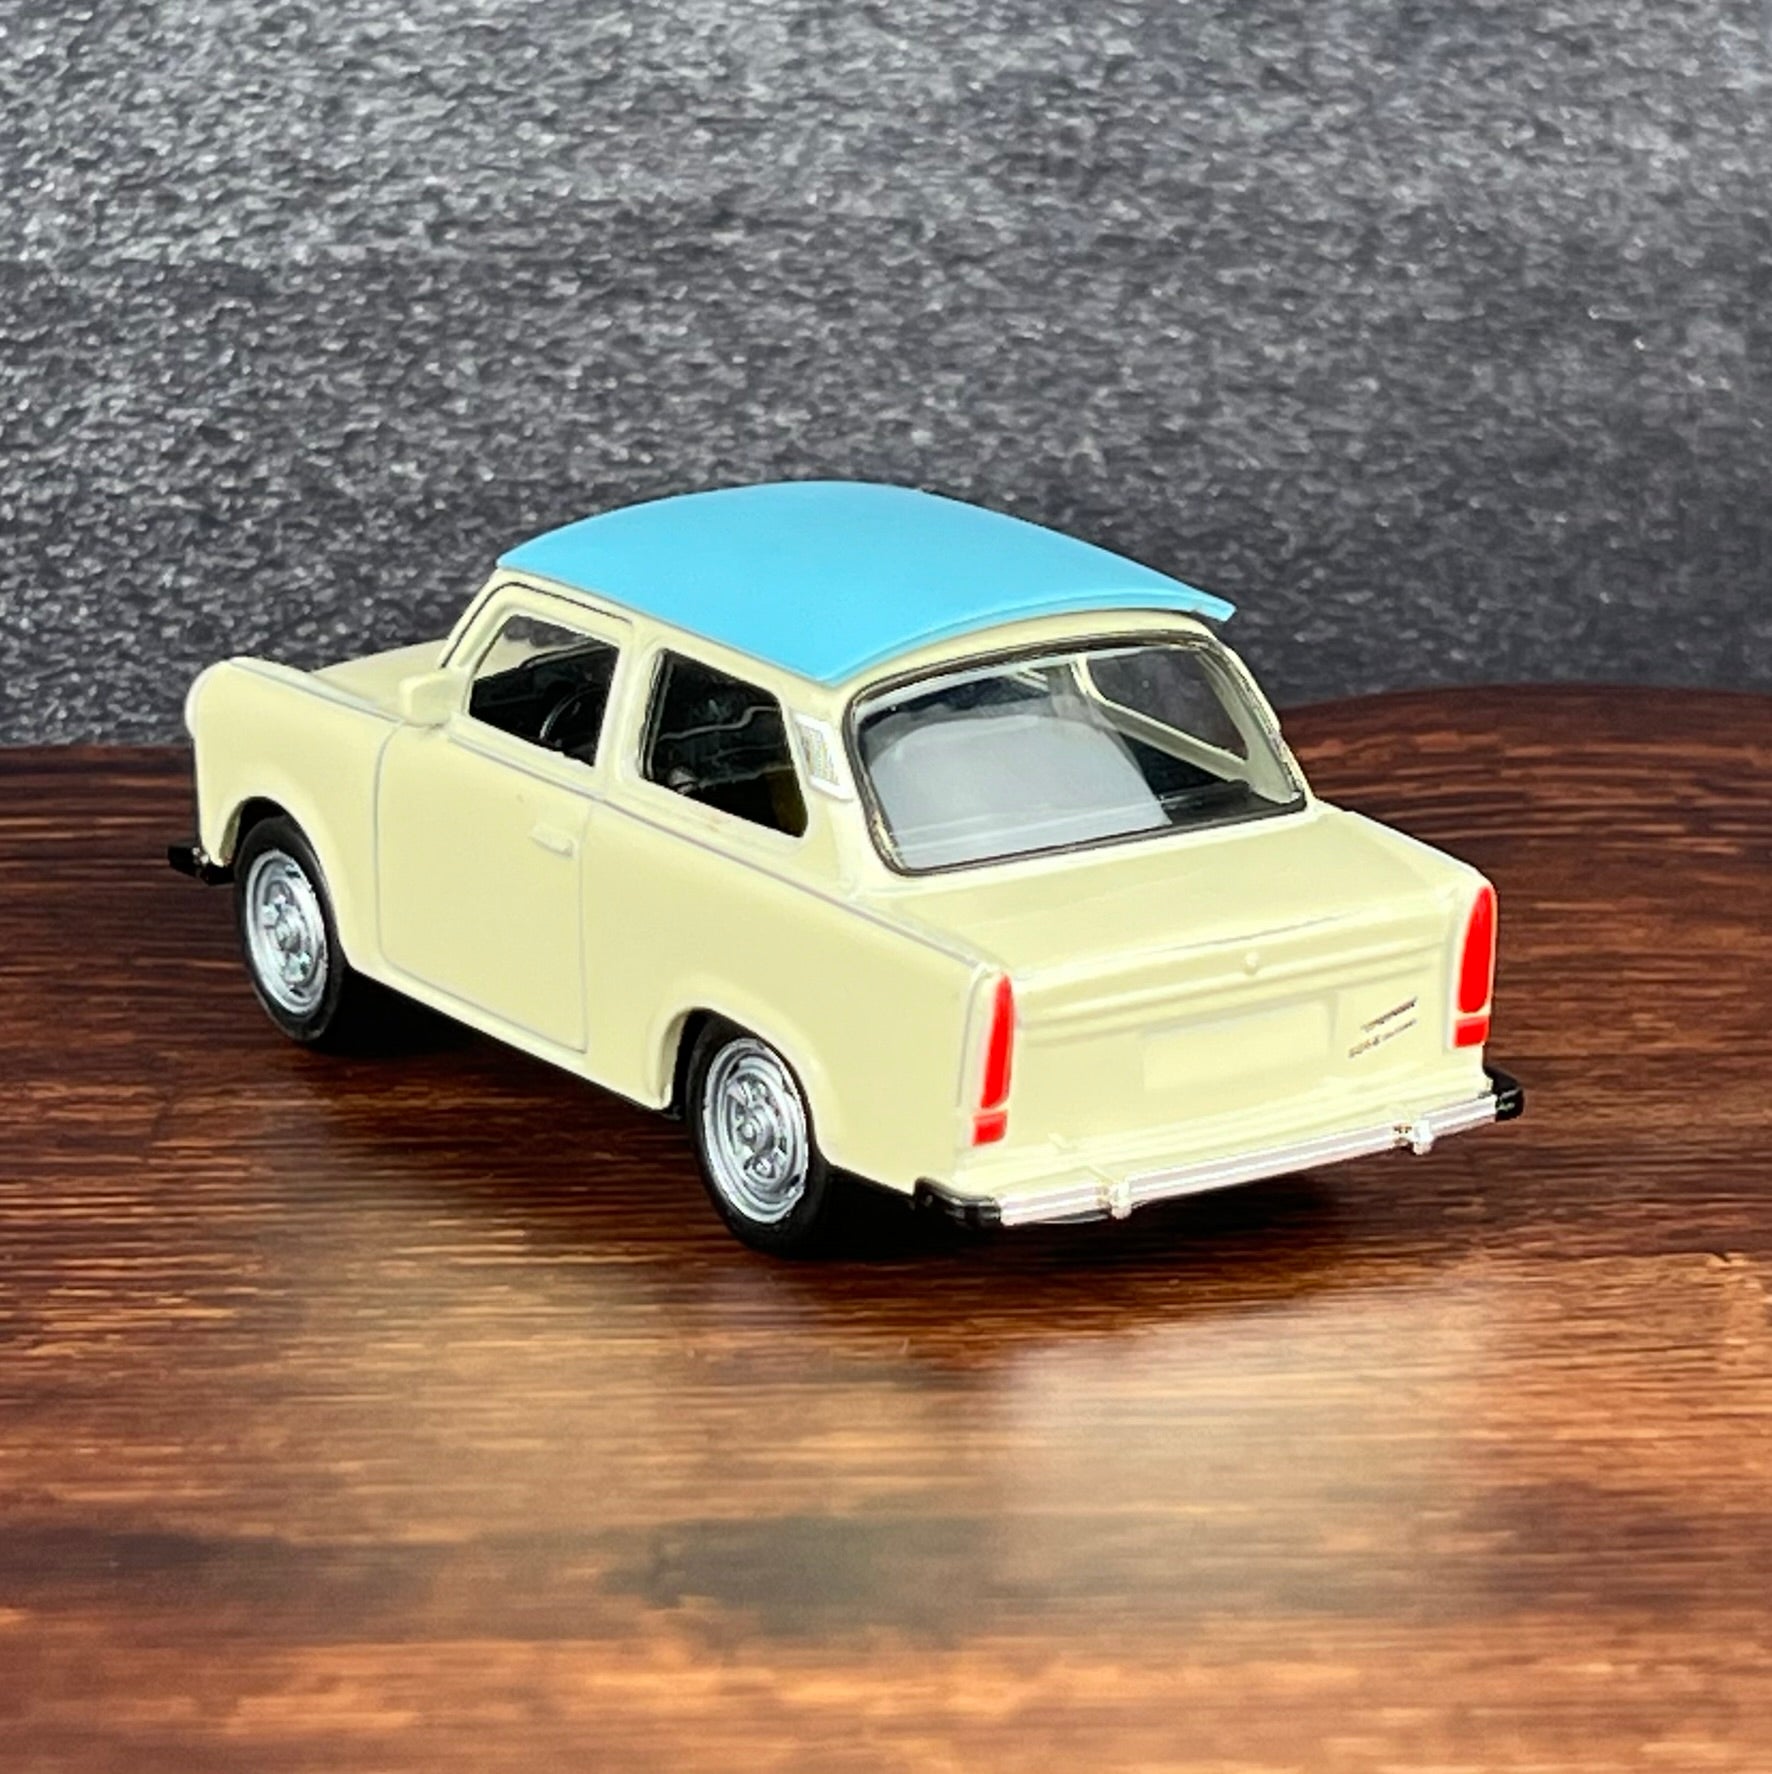 Trabant 601 Limousine Modellauto, papyrusweiß mit himmelblauem Dach, 11cm lang, Aufziehfunktion, bewegliche Teile